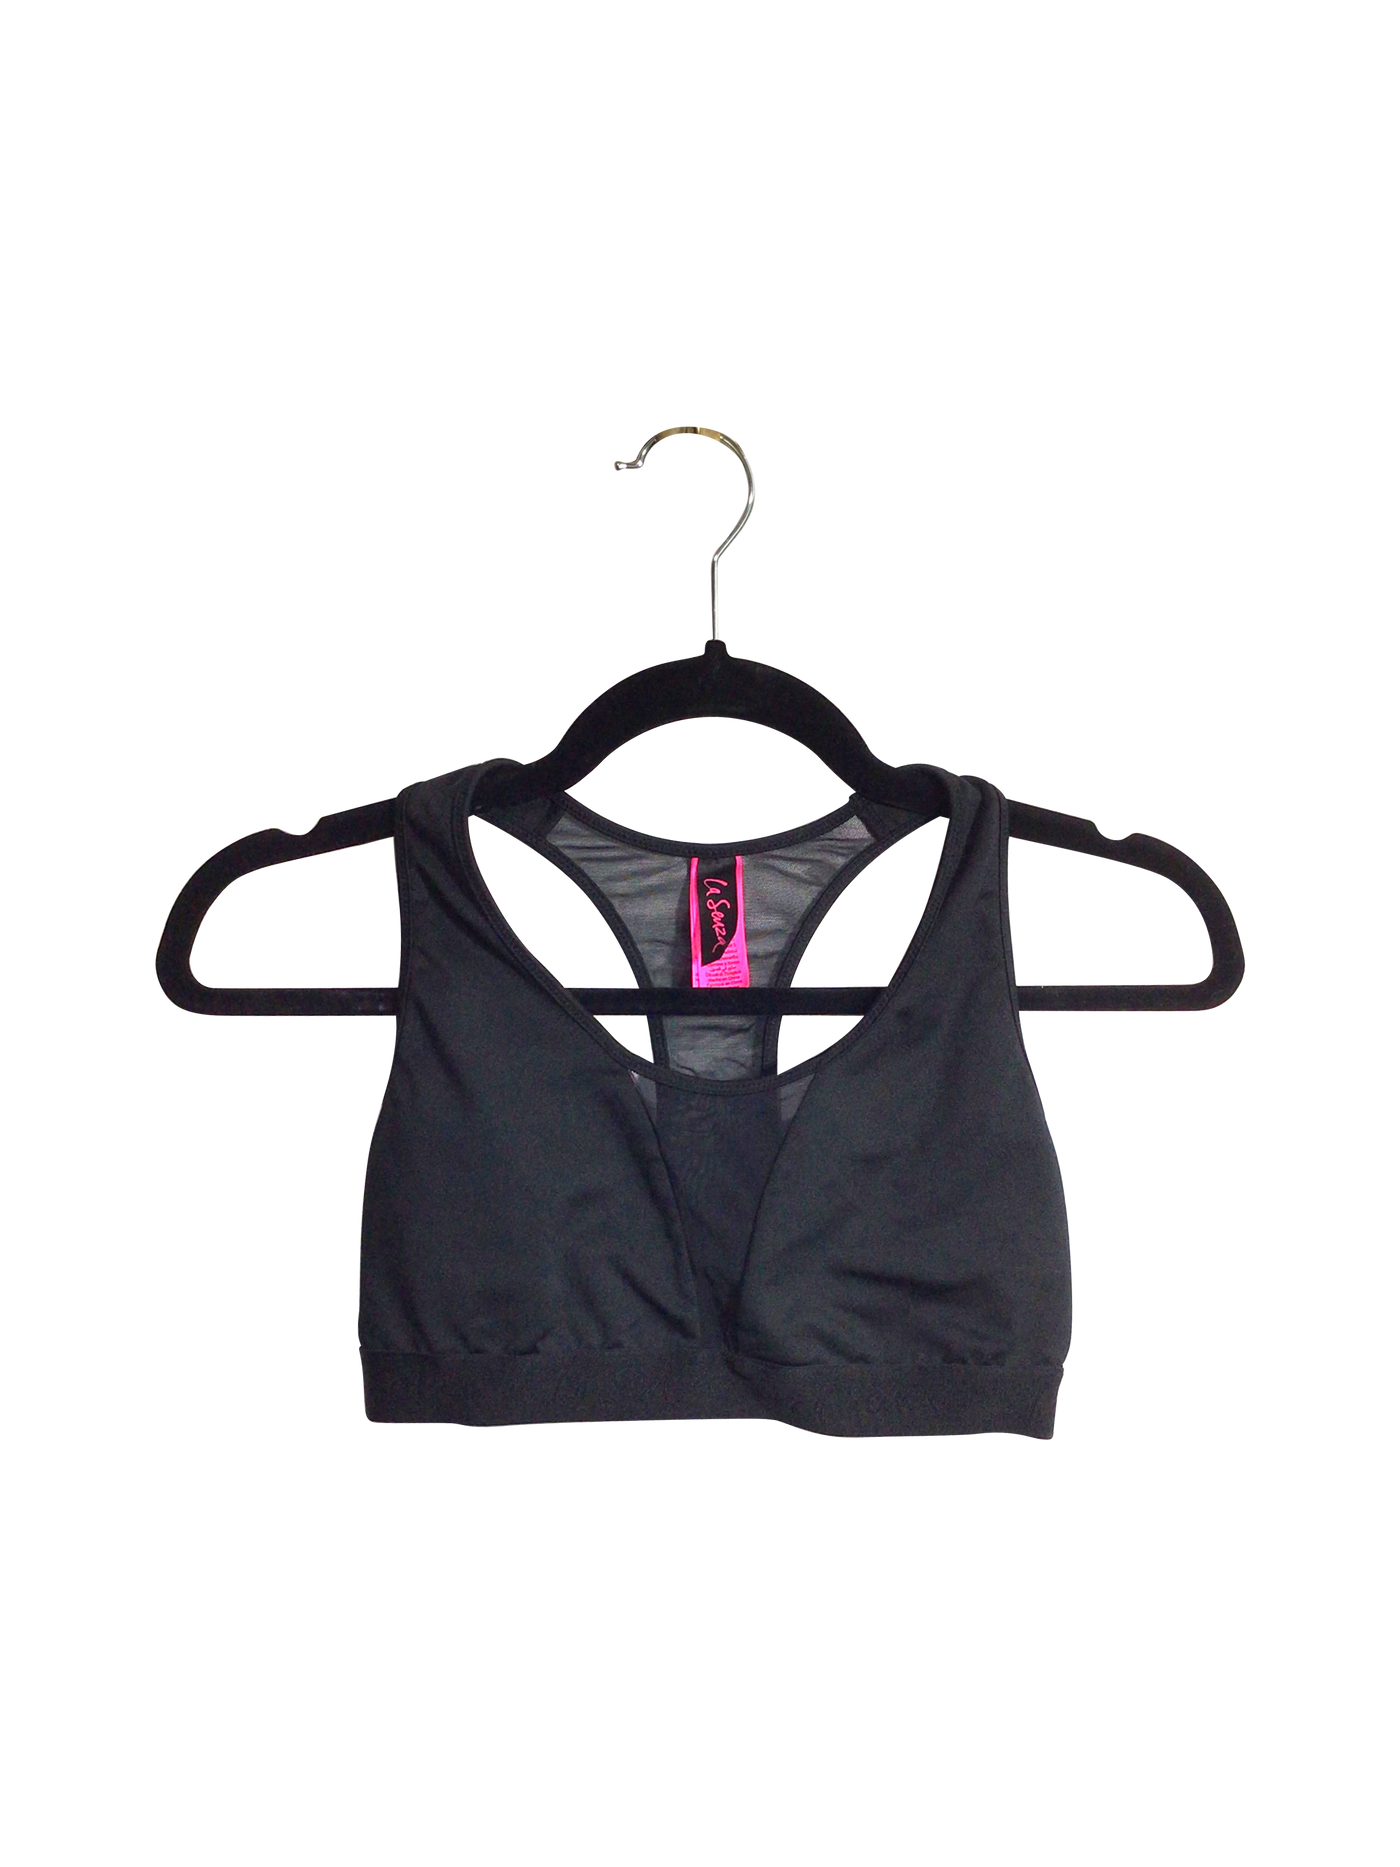 LA SENZA Women Activewear Sports Bras Regular fit in Black - Size L | 16.35 $ KOOP